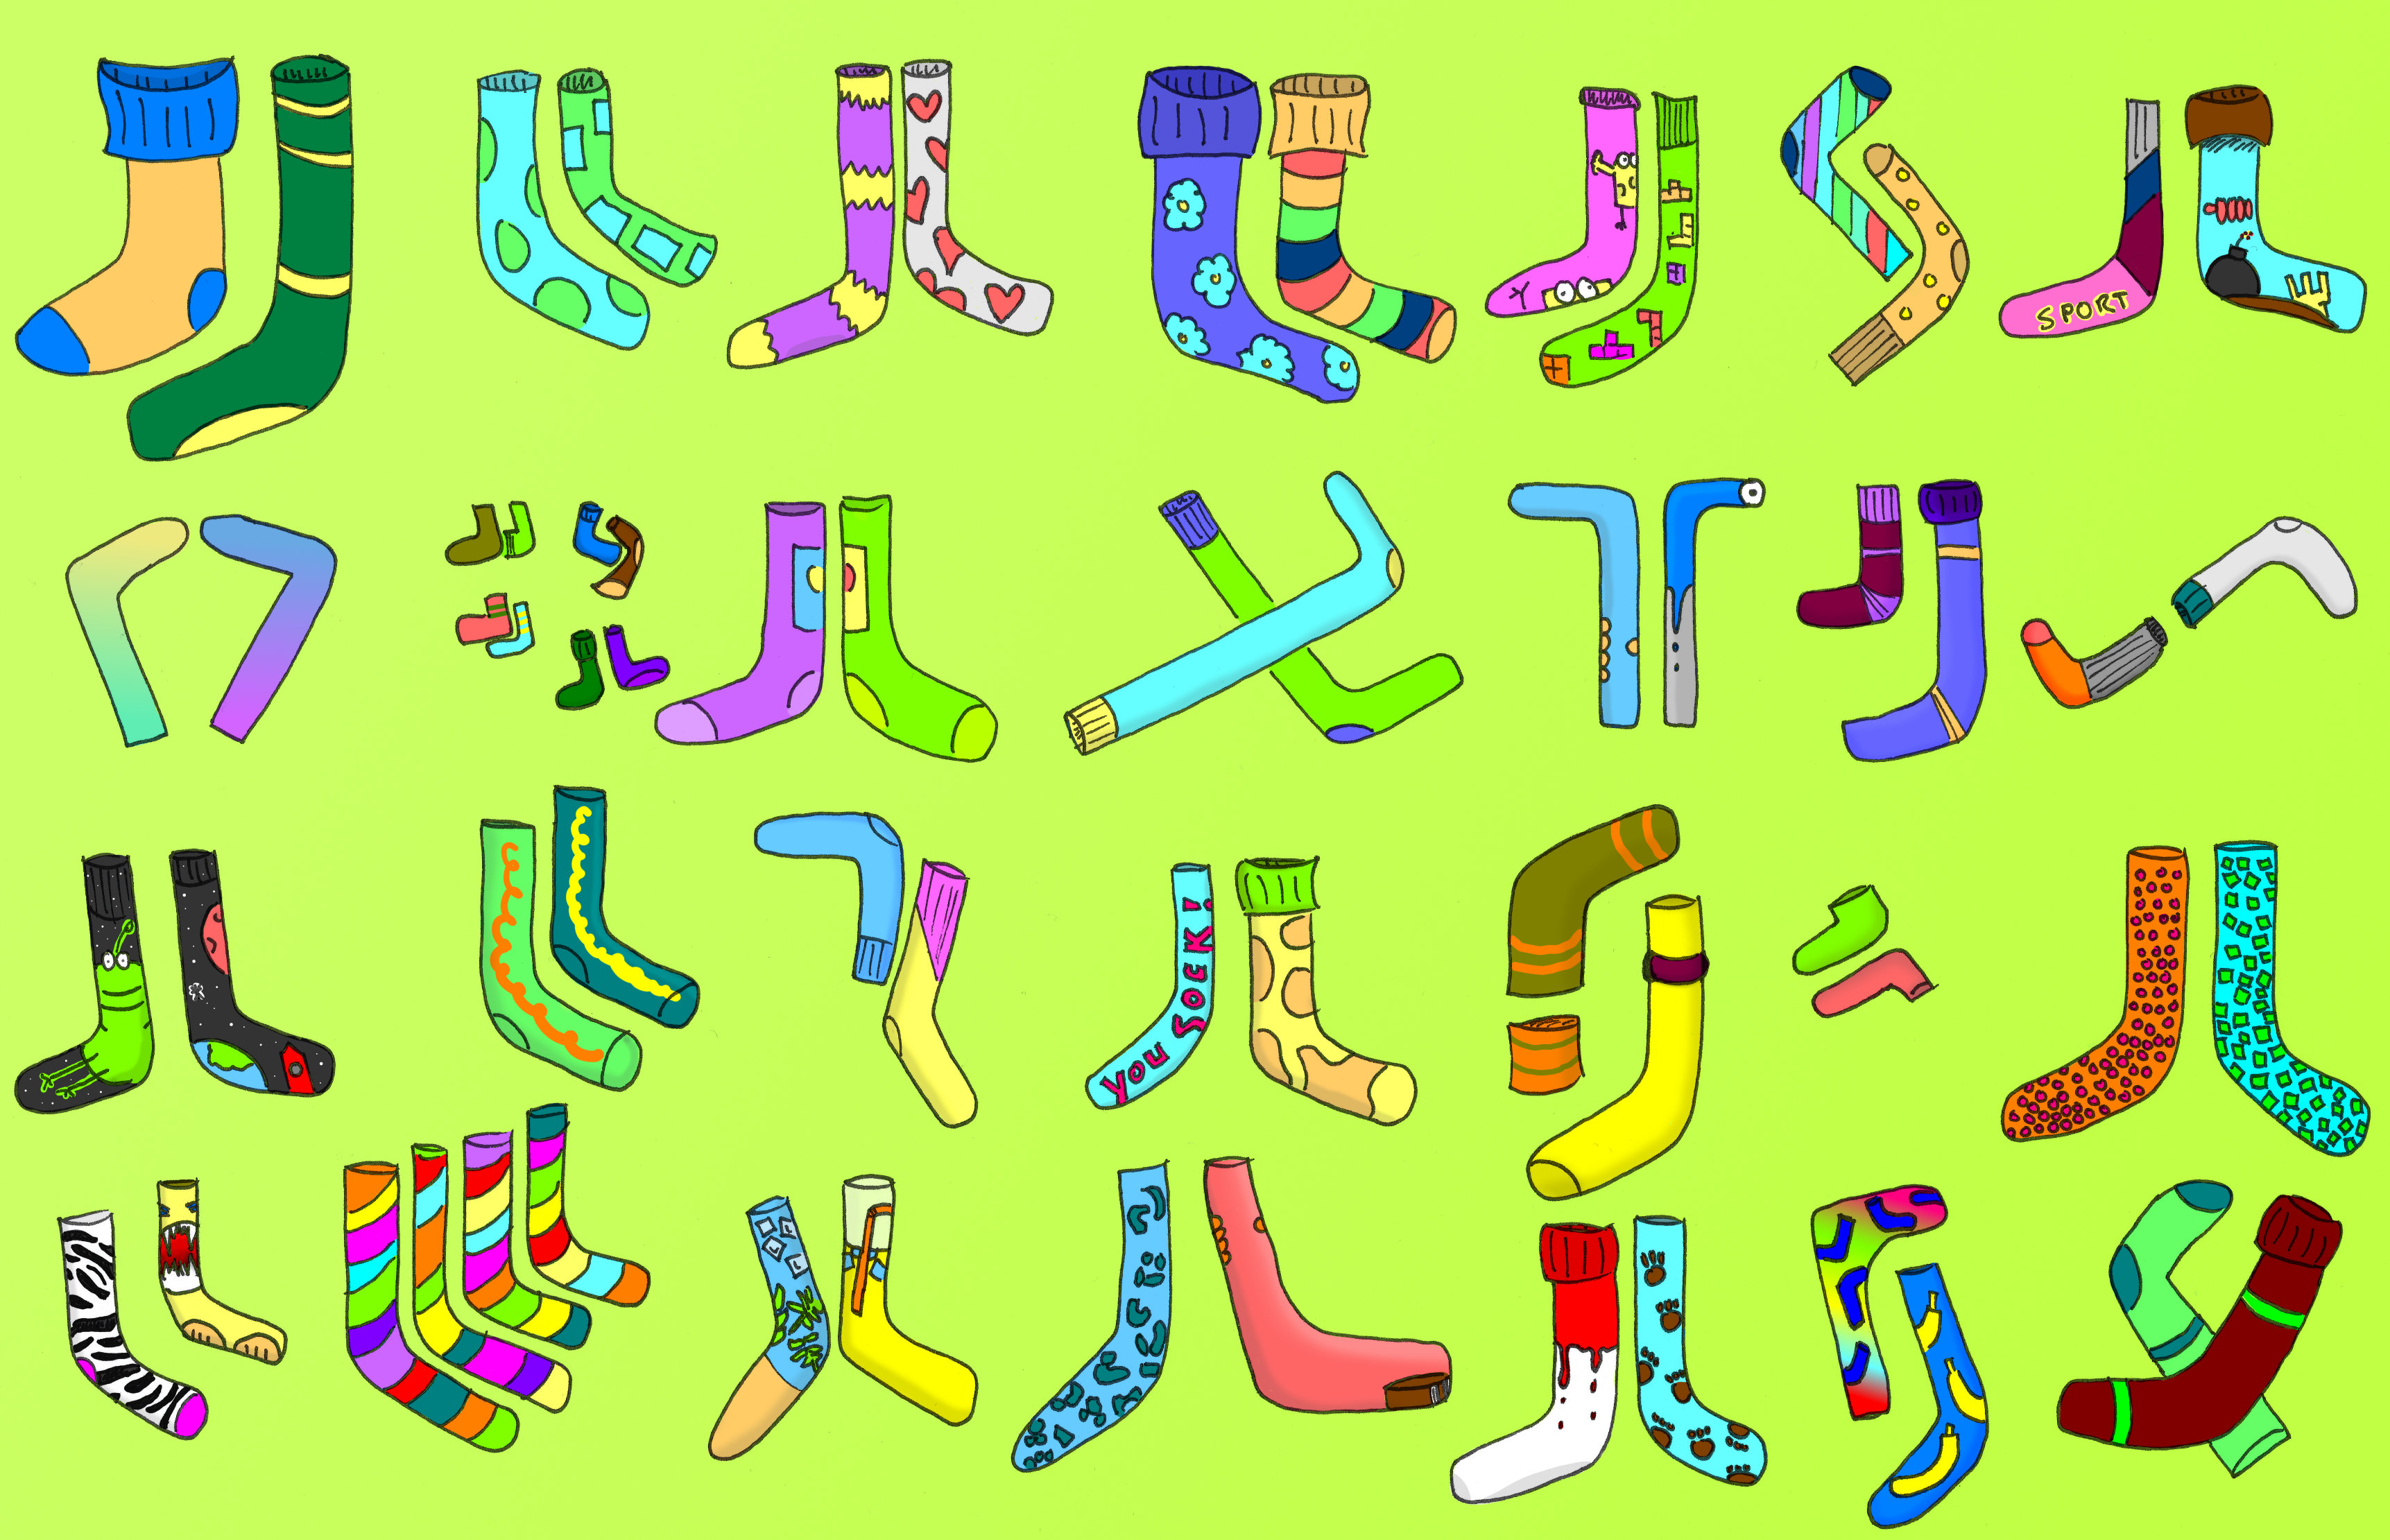 A lot of socks